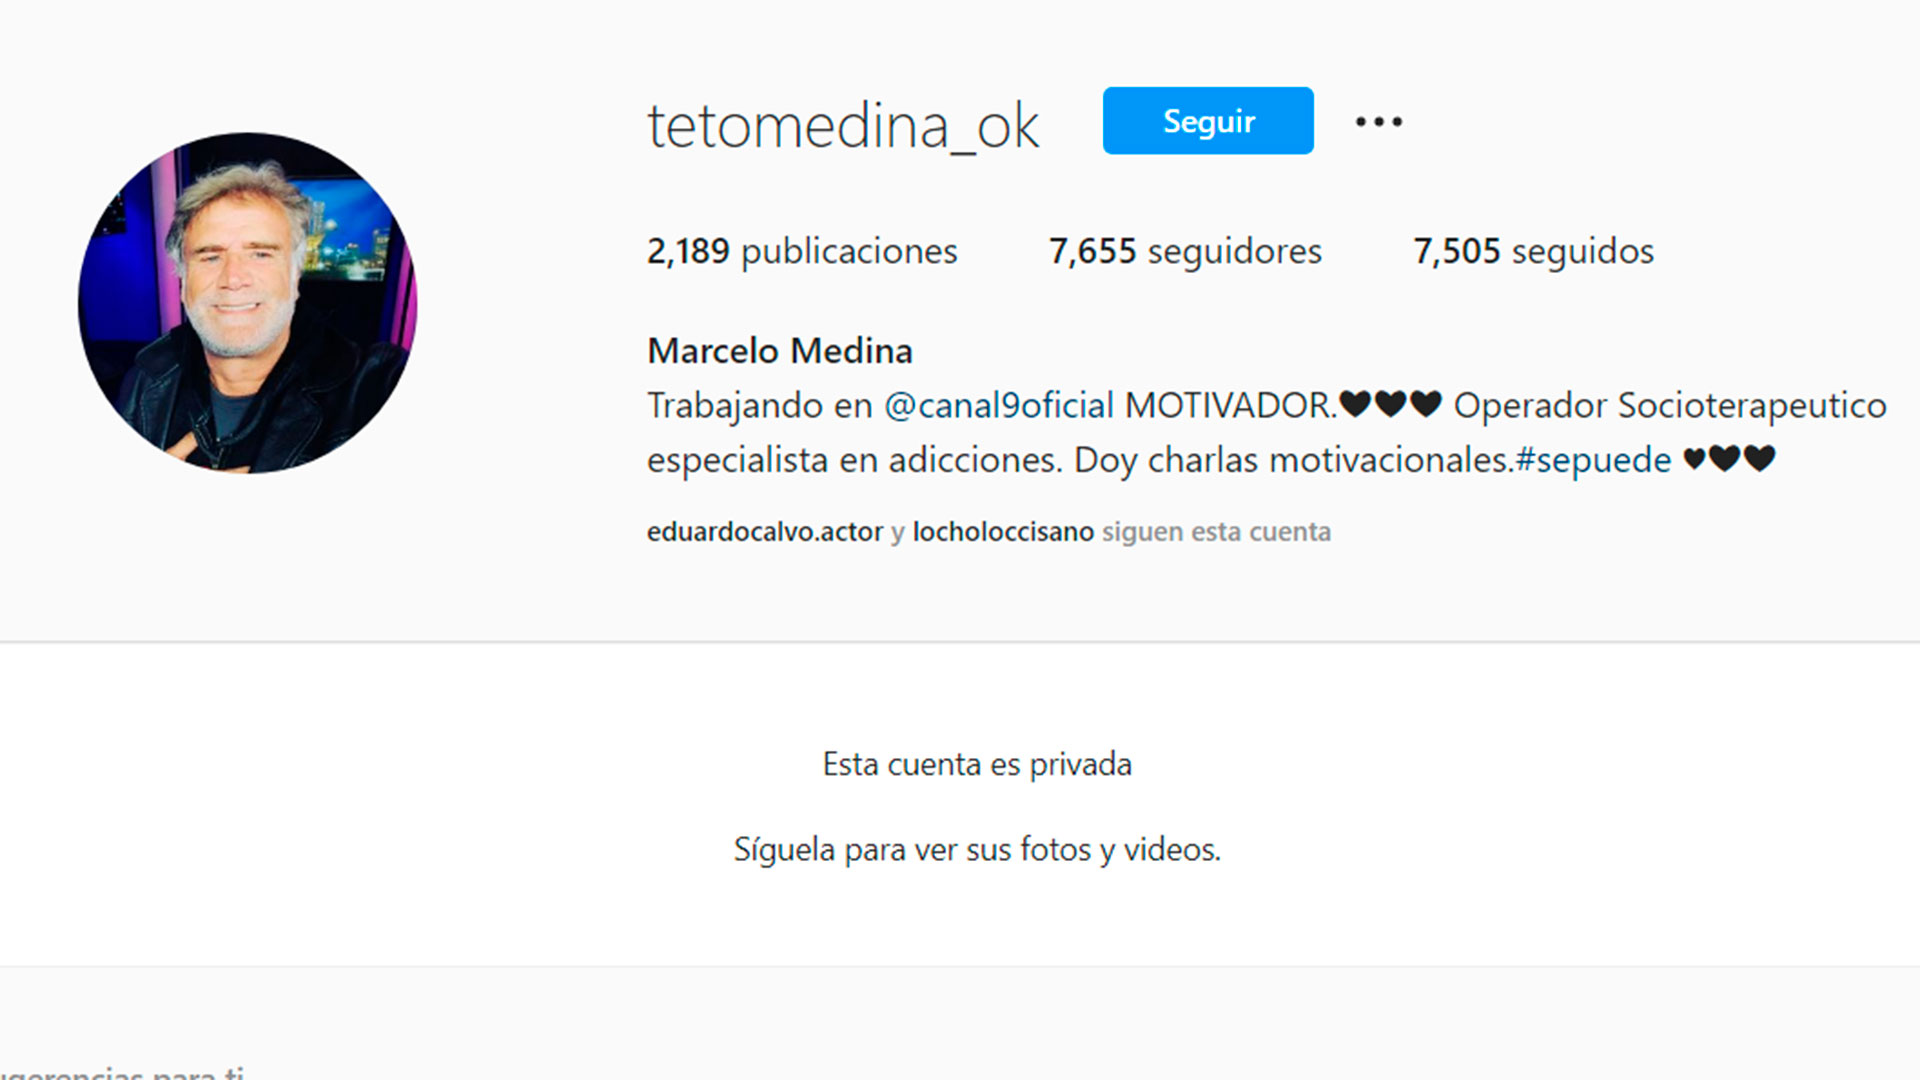 En sus redes sociales el Teto Medina se define como “MOTIVADOR. Operador Socio terapéutico especialista en adicciones. Doy charlas motivacionales.. Se puede"